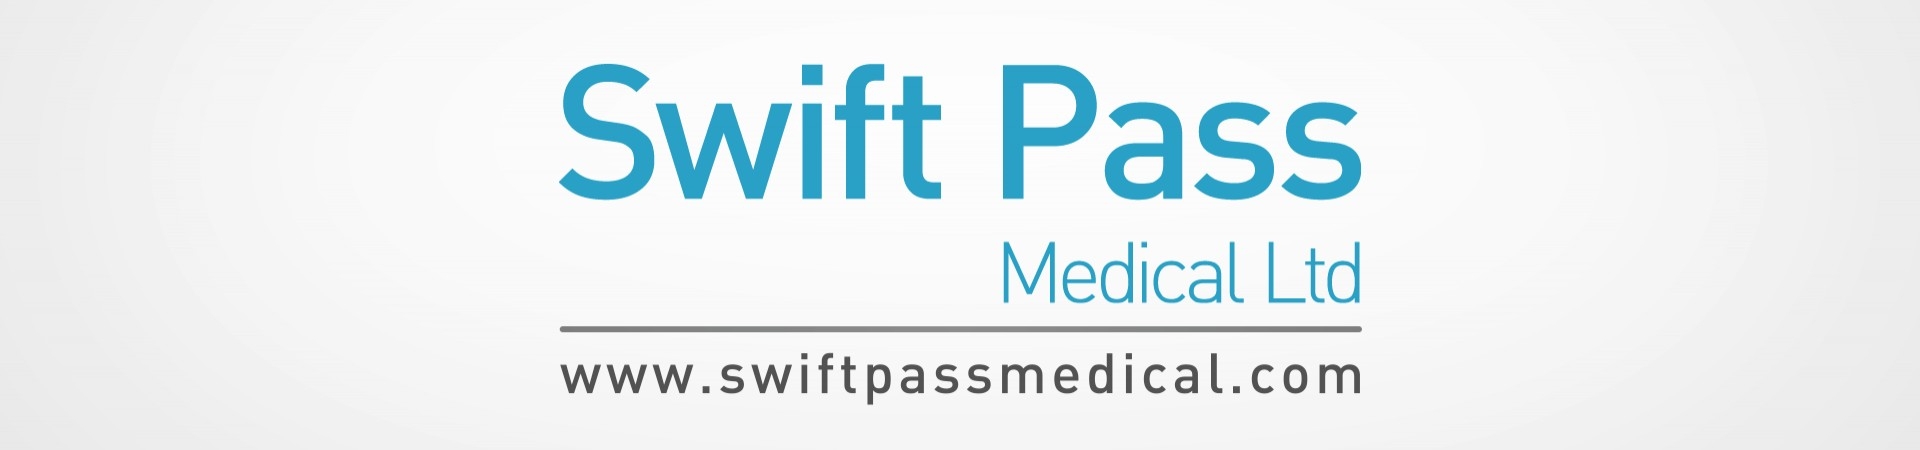 Swift-Pass Medical